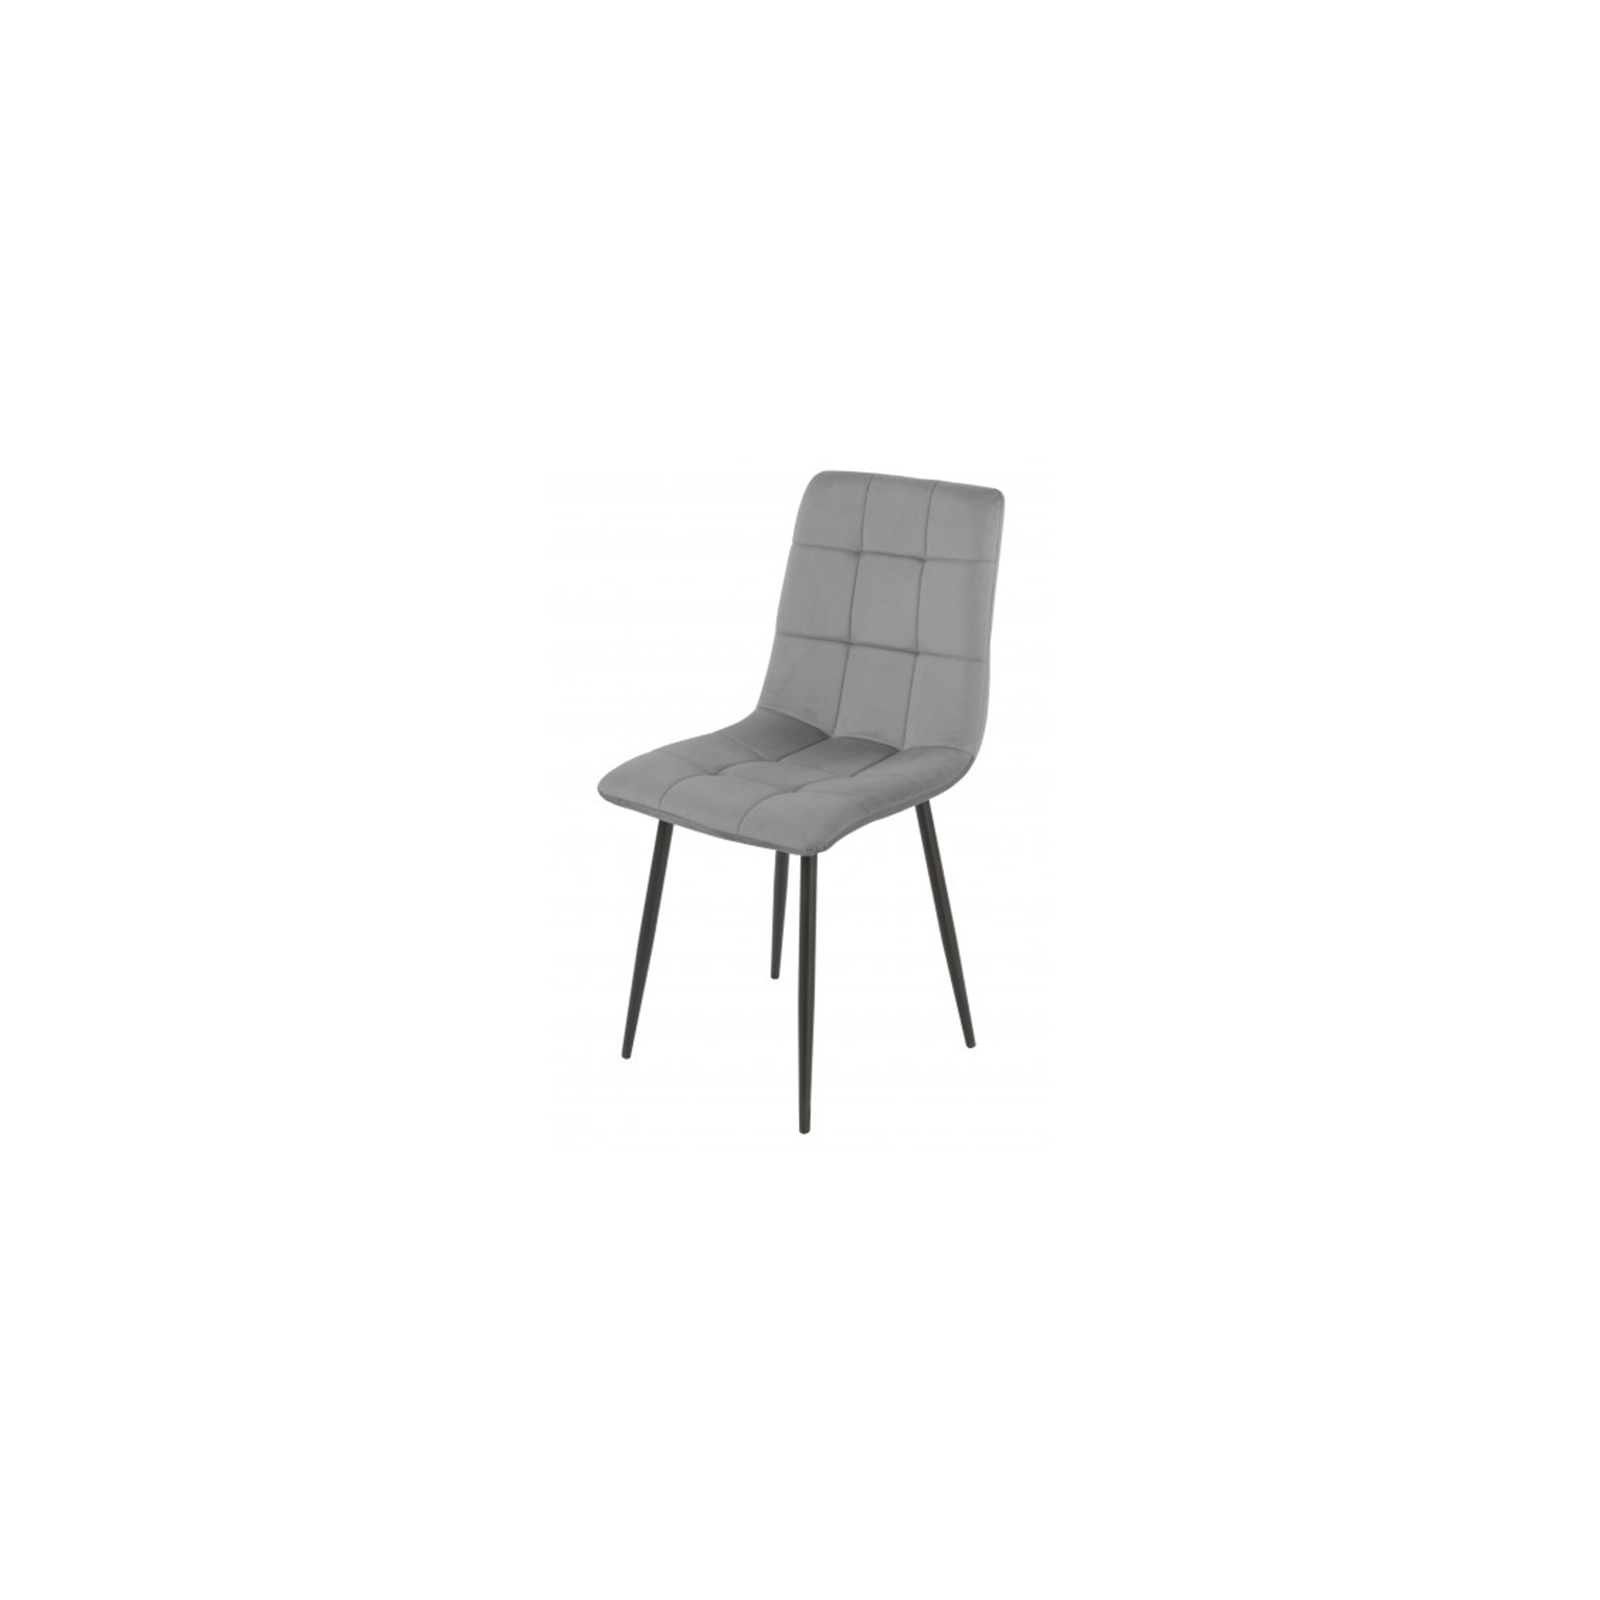 Кухонный стул Special4You Success light grey (E6576)